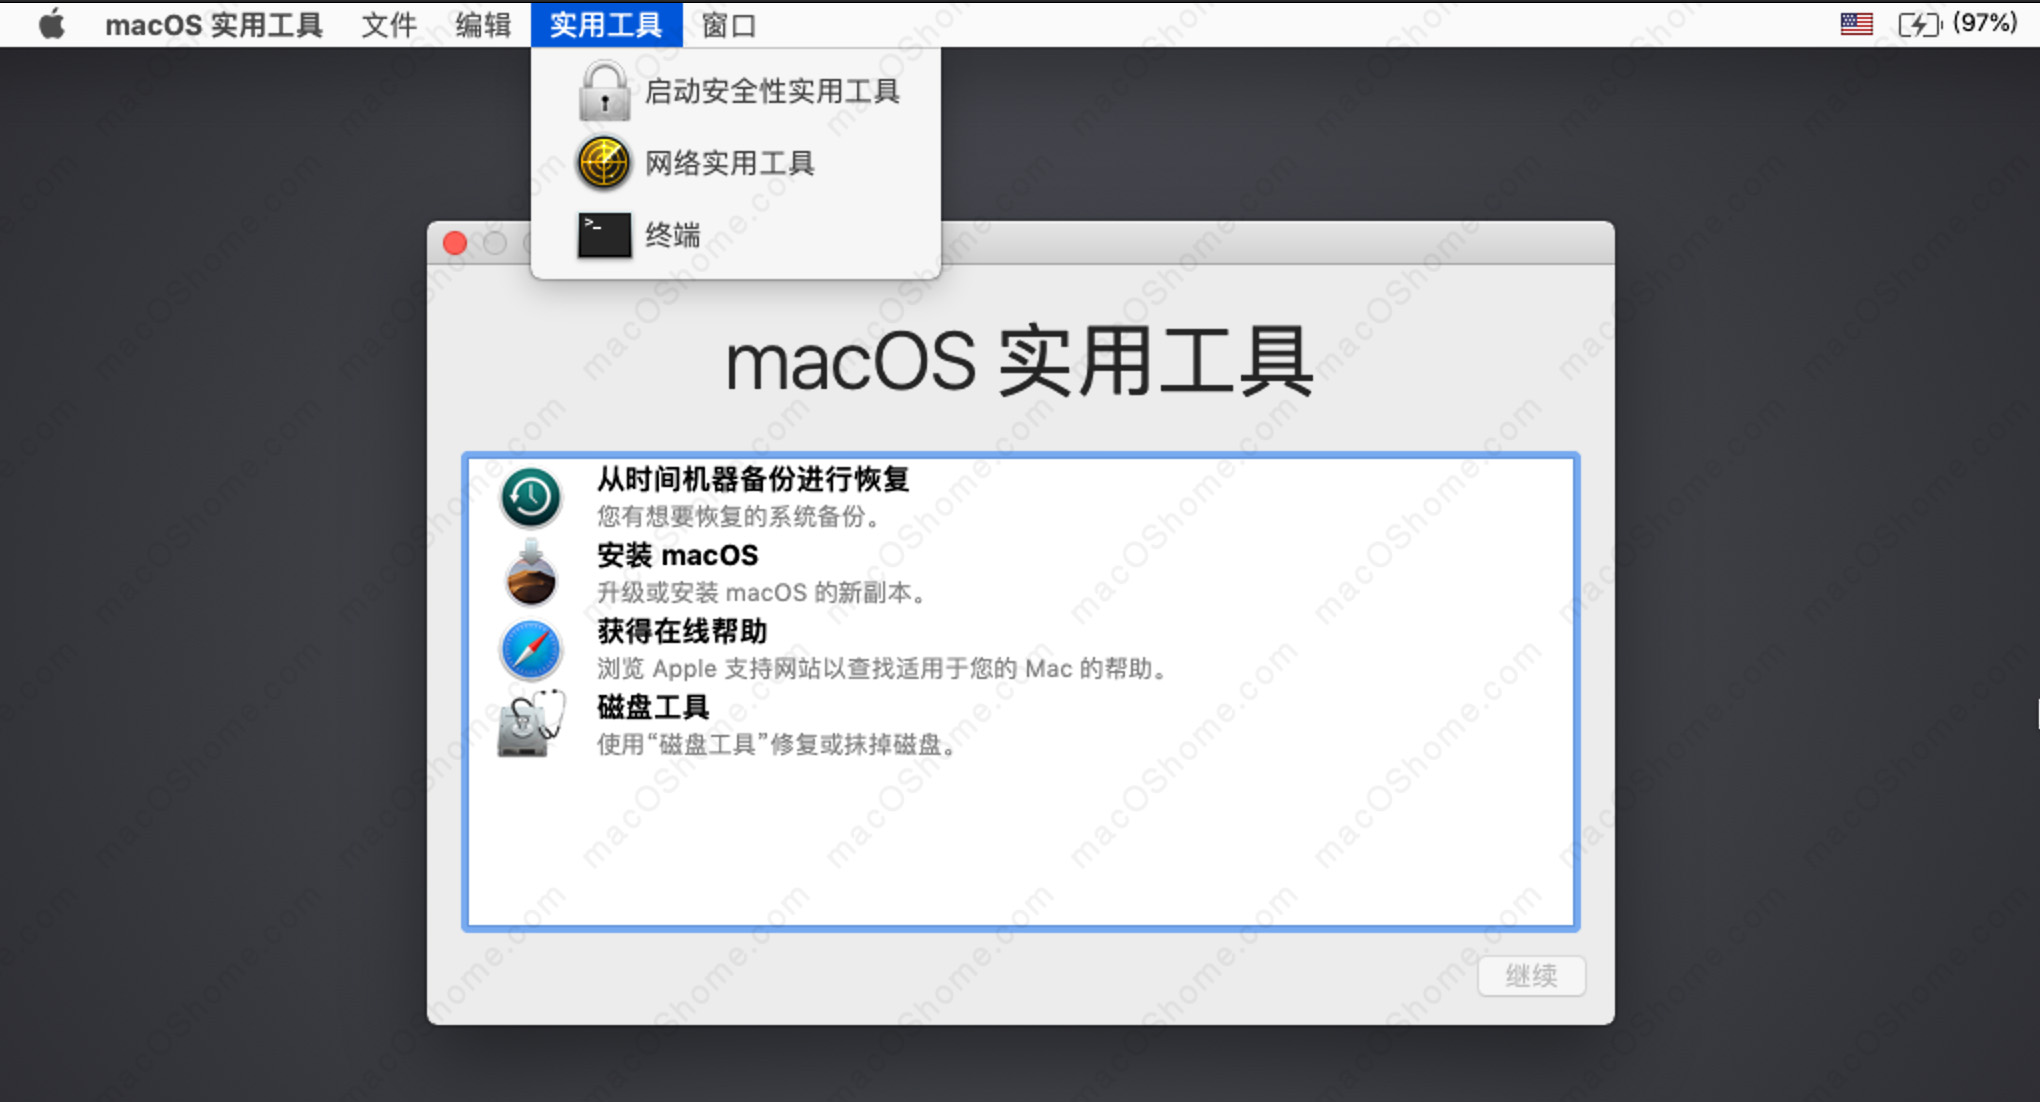 这个“安装 macOS Mojave” 应用程序副本已损坏,不能用来安装macOS